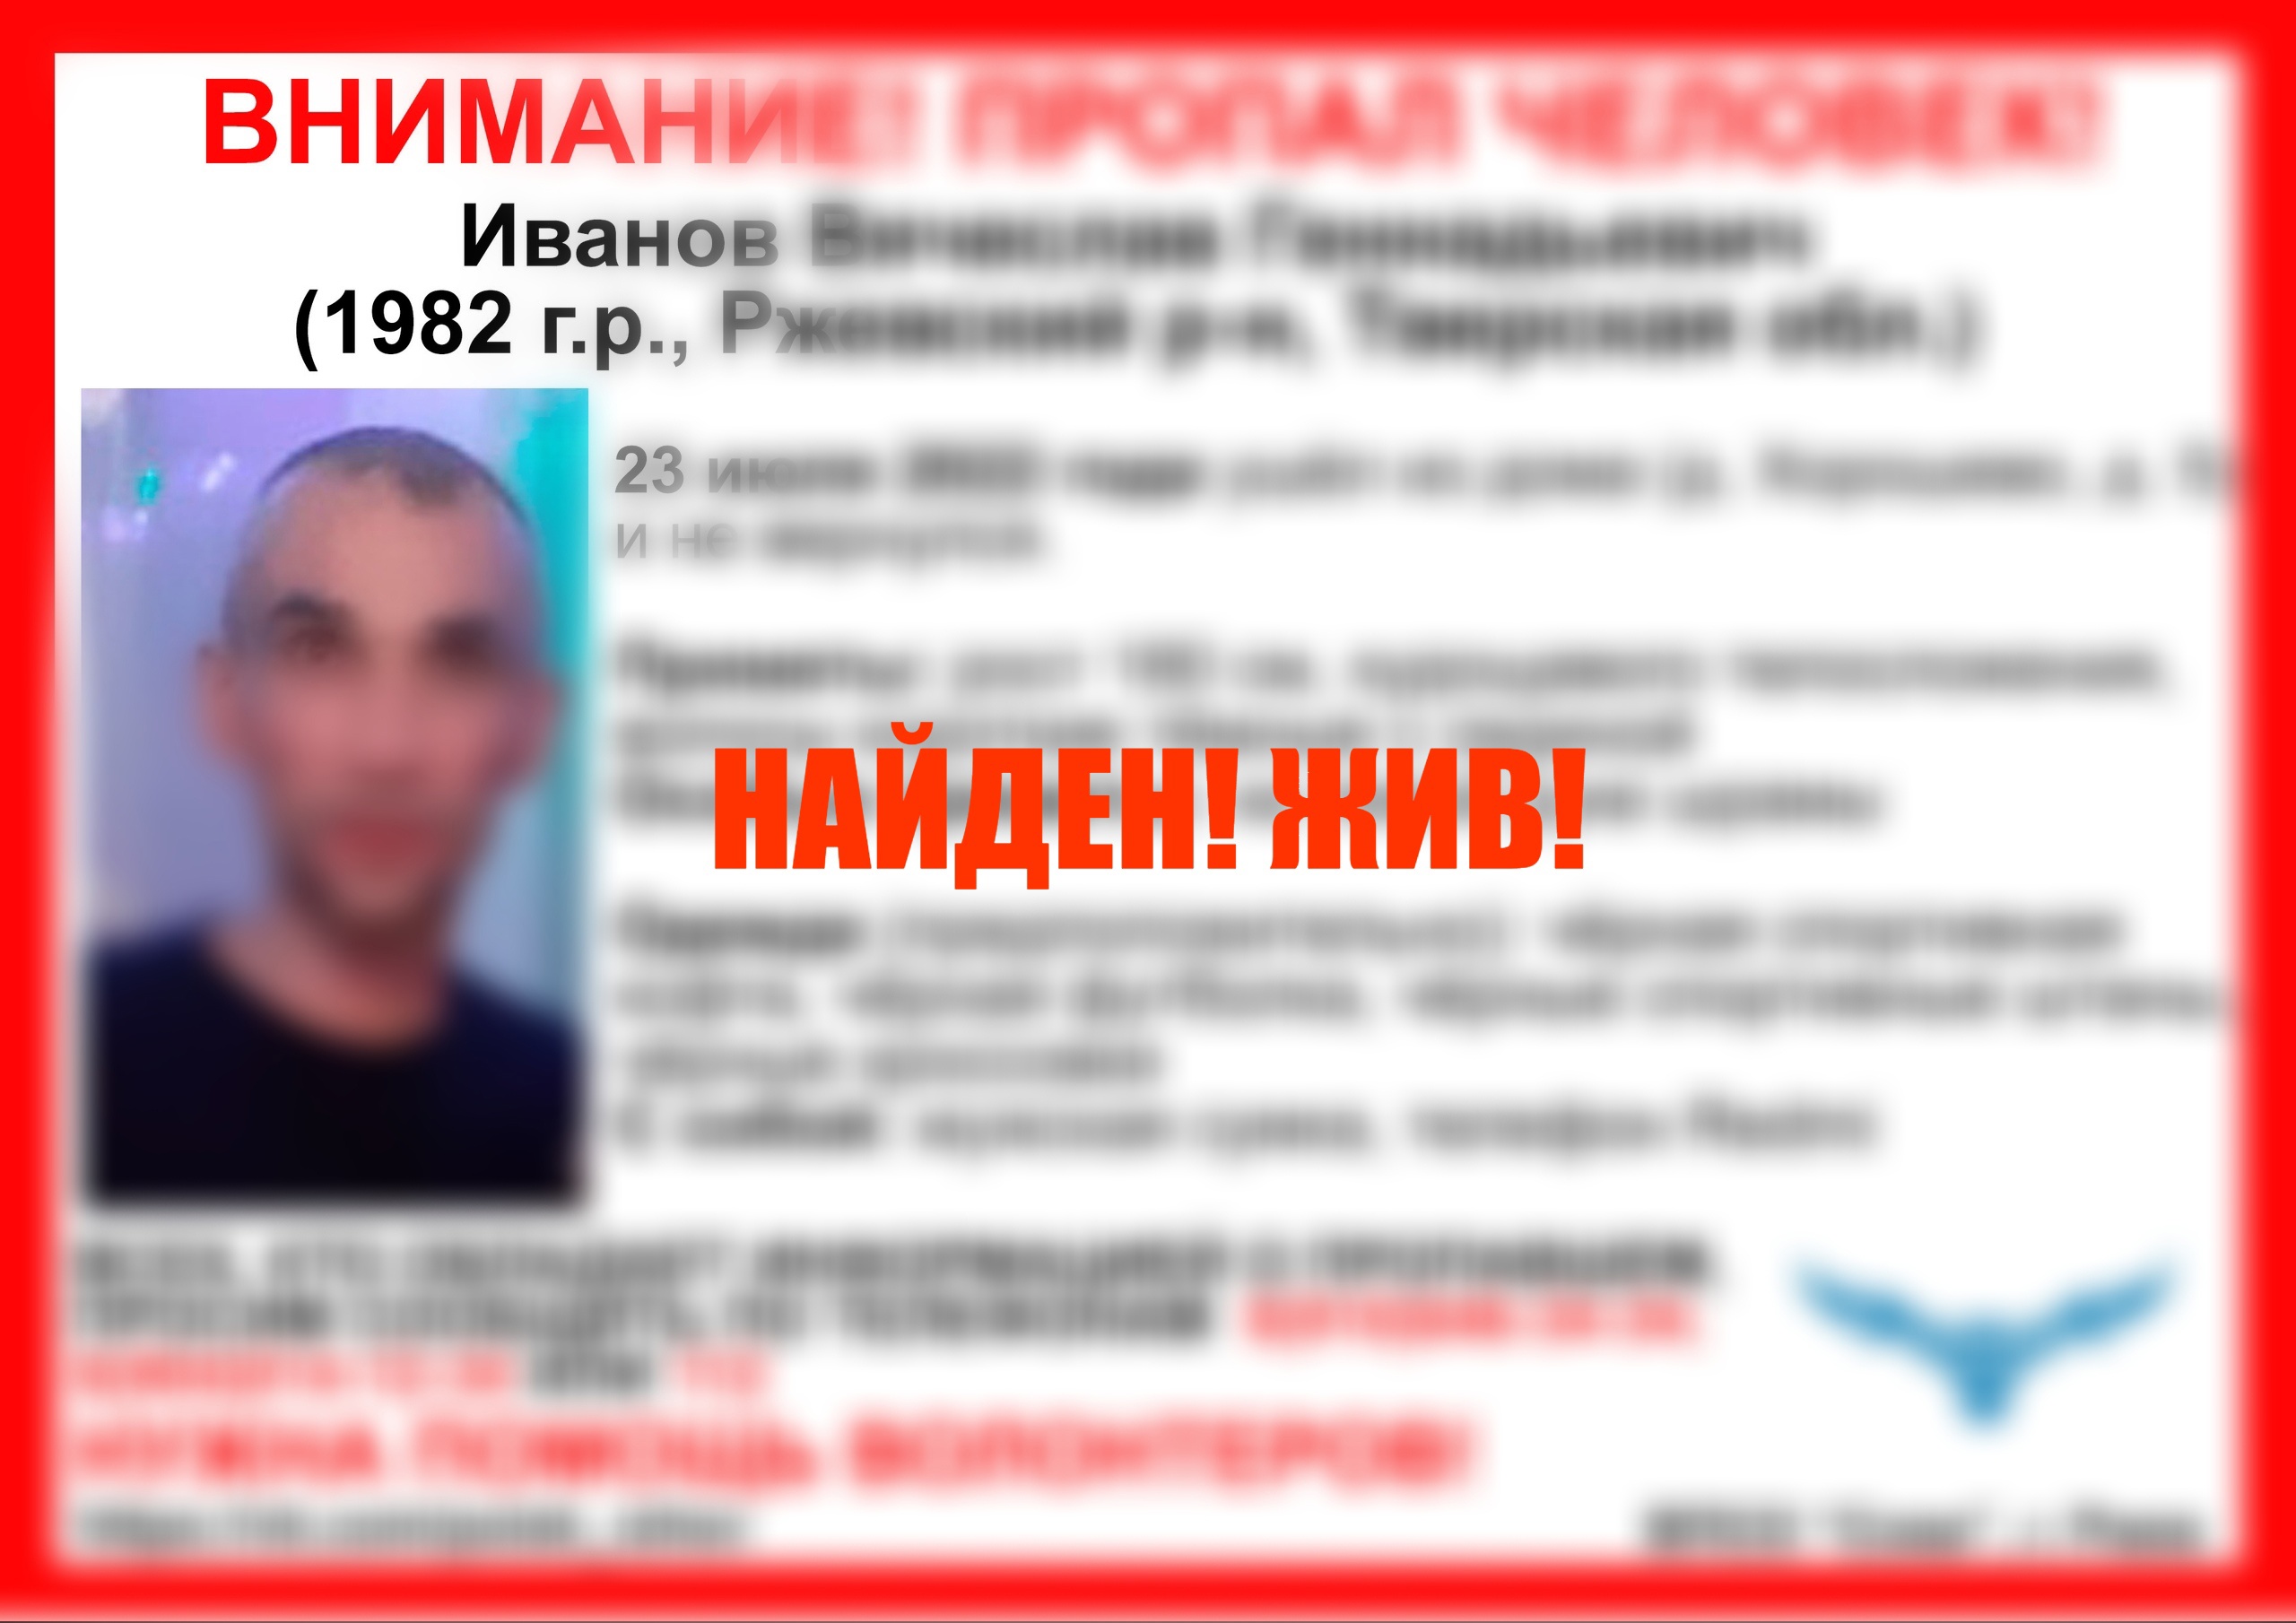 Пропавшего жителя Ржевского района нашли живым